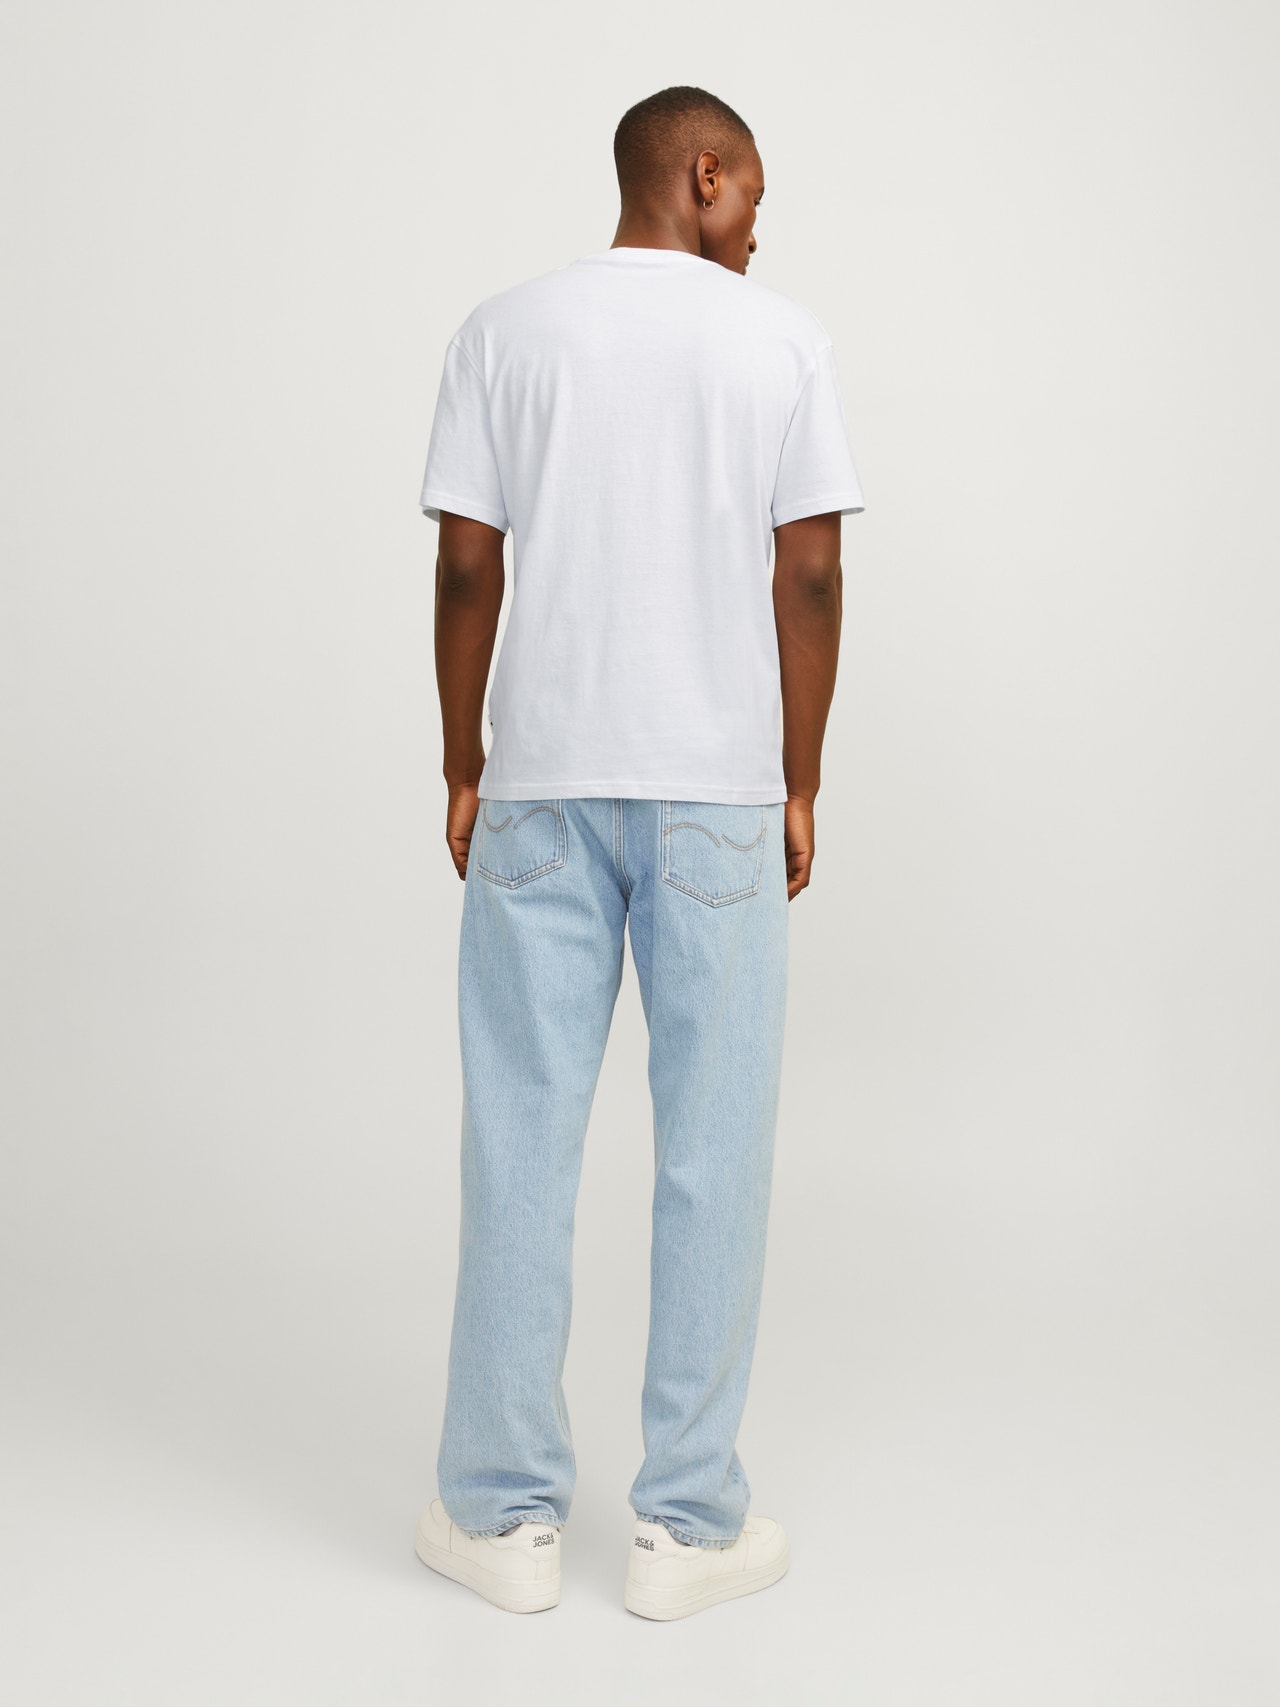 Jack & Jones T-shirt Estampar Decote Redondo -Bright White - 12255376